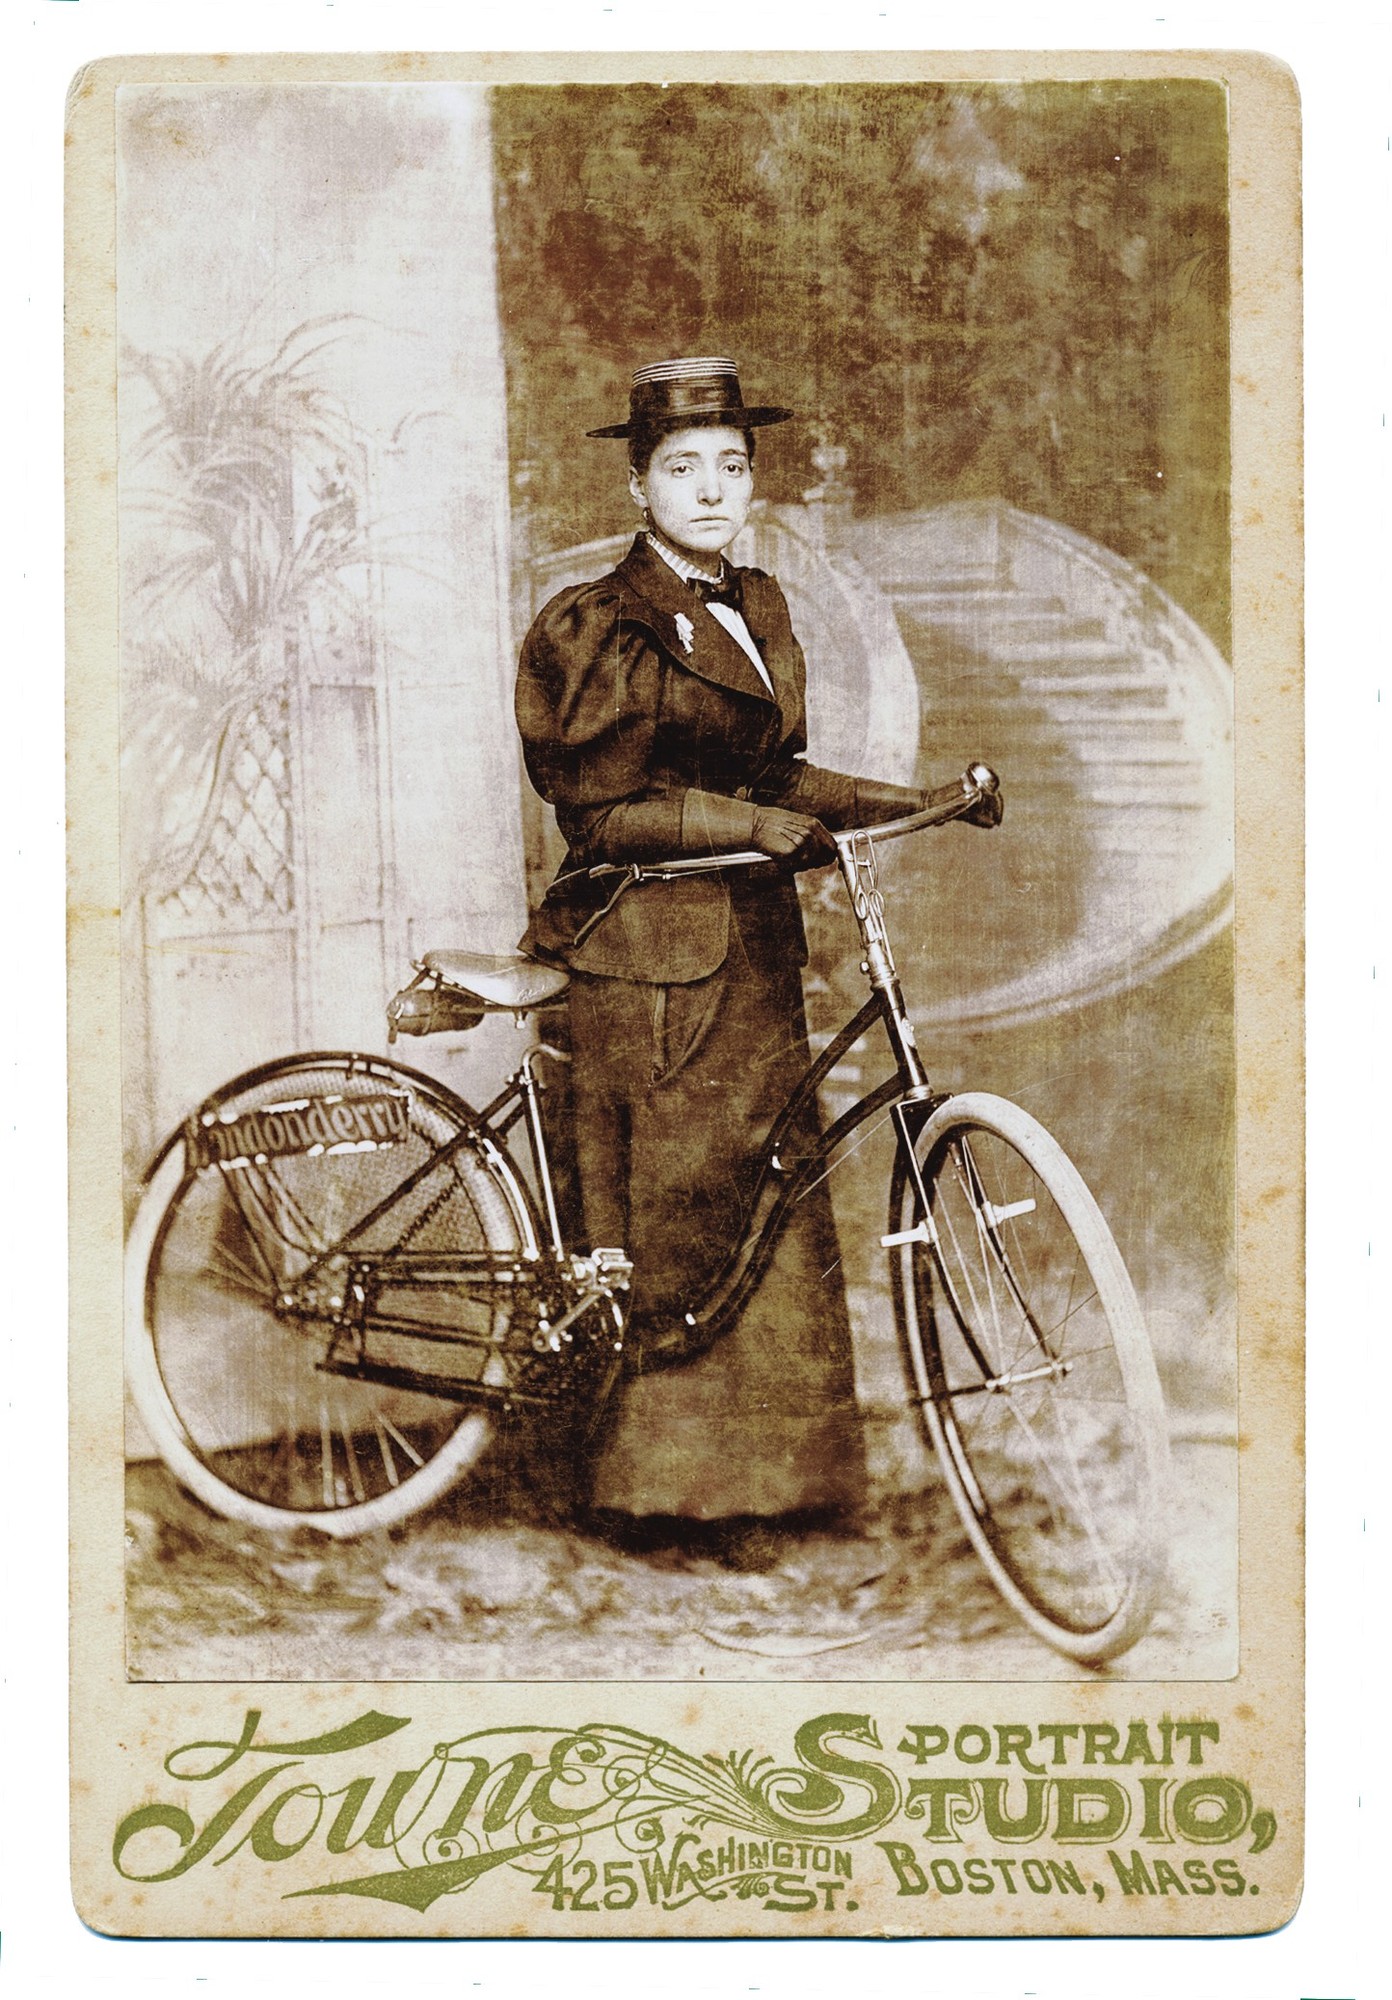 Annie Londonderry (1894-1895)